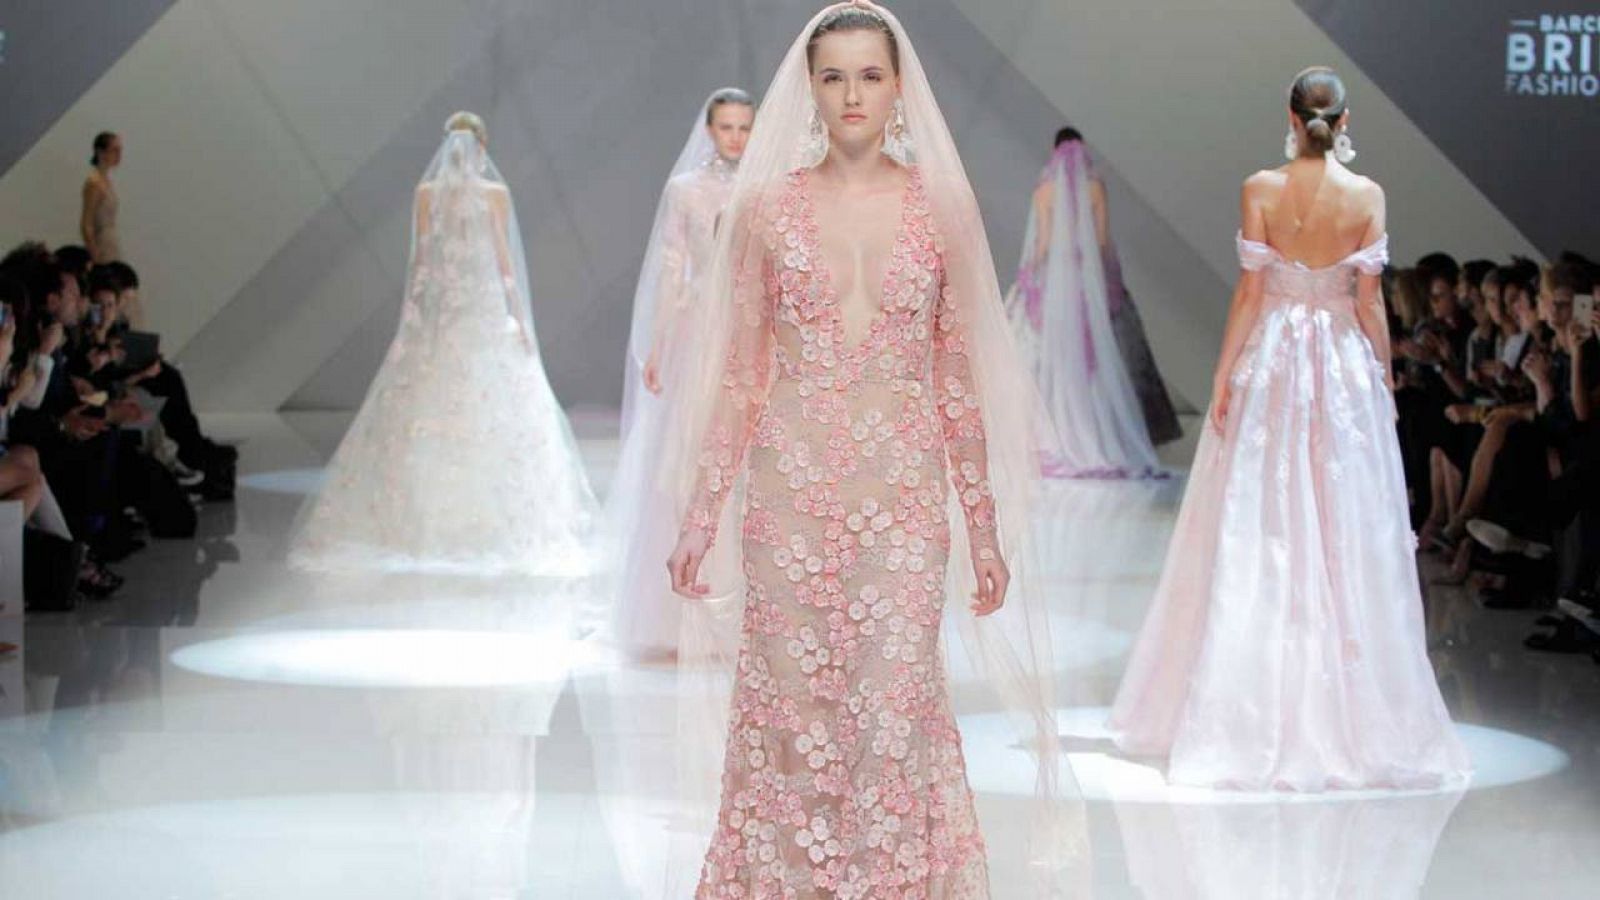 El rosa, el nuevo blanco, coge peso en la moda nupcial. Desfile de Naeem Khan.